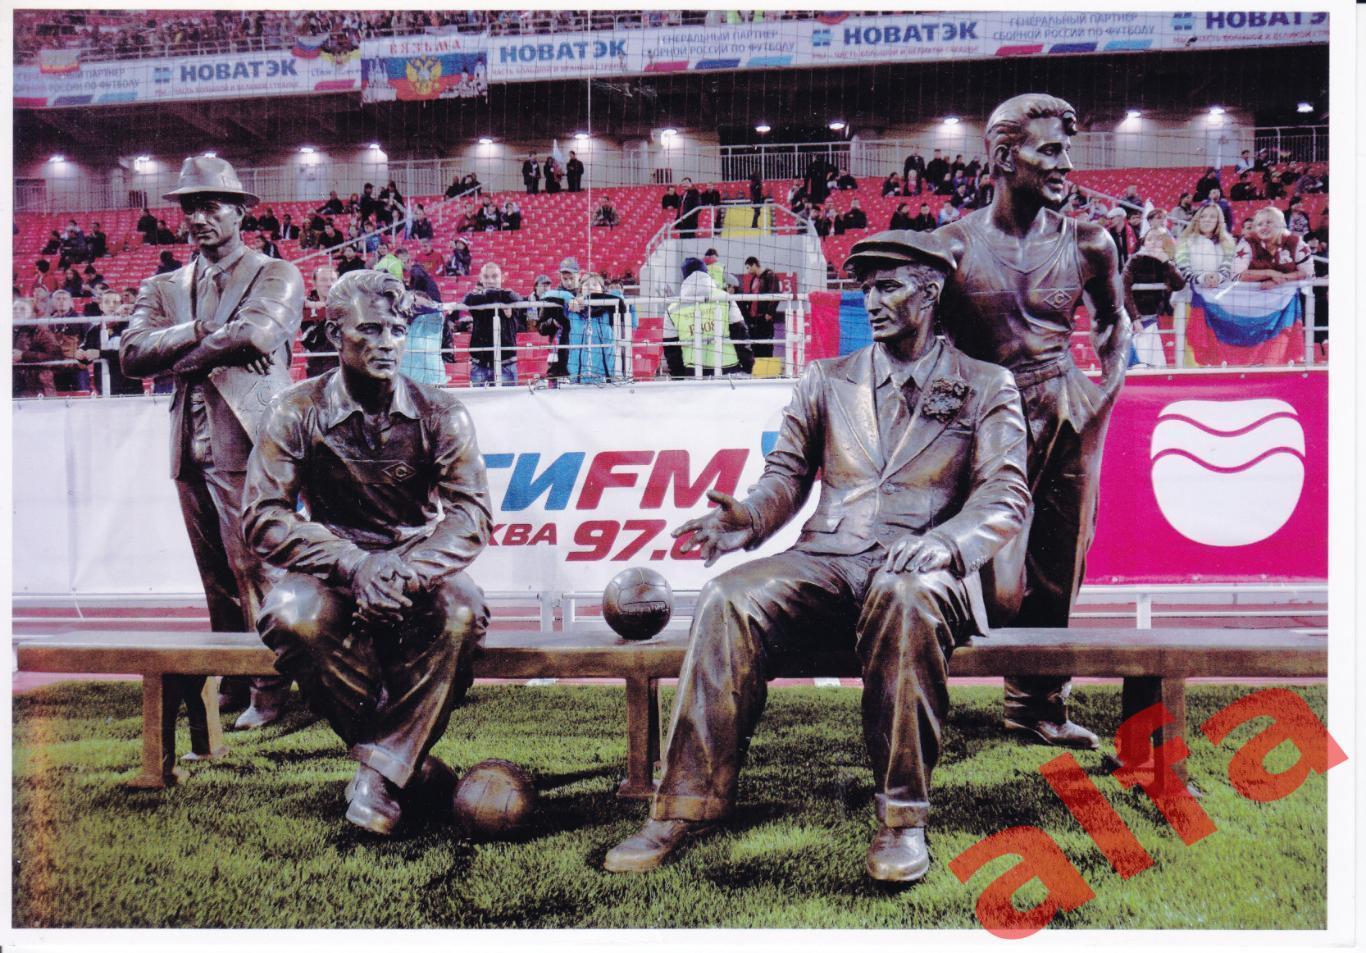 Скульптура братьев Старостиных на стадионе Открытие-арена. Фото Голикова.